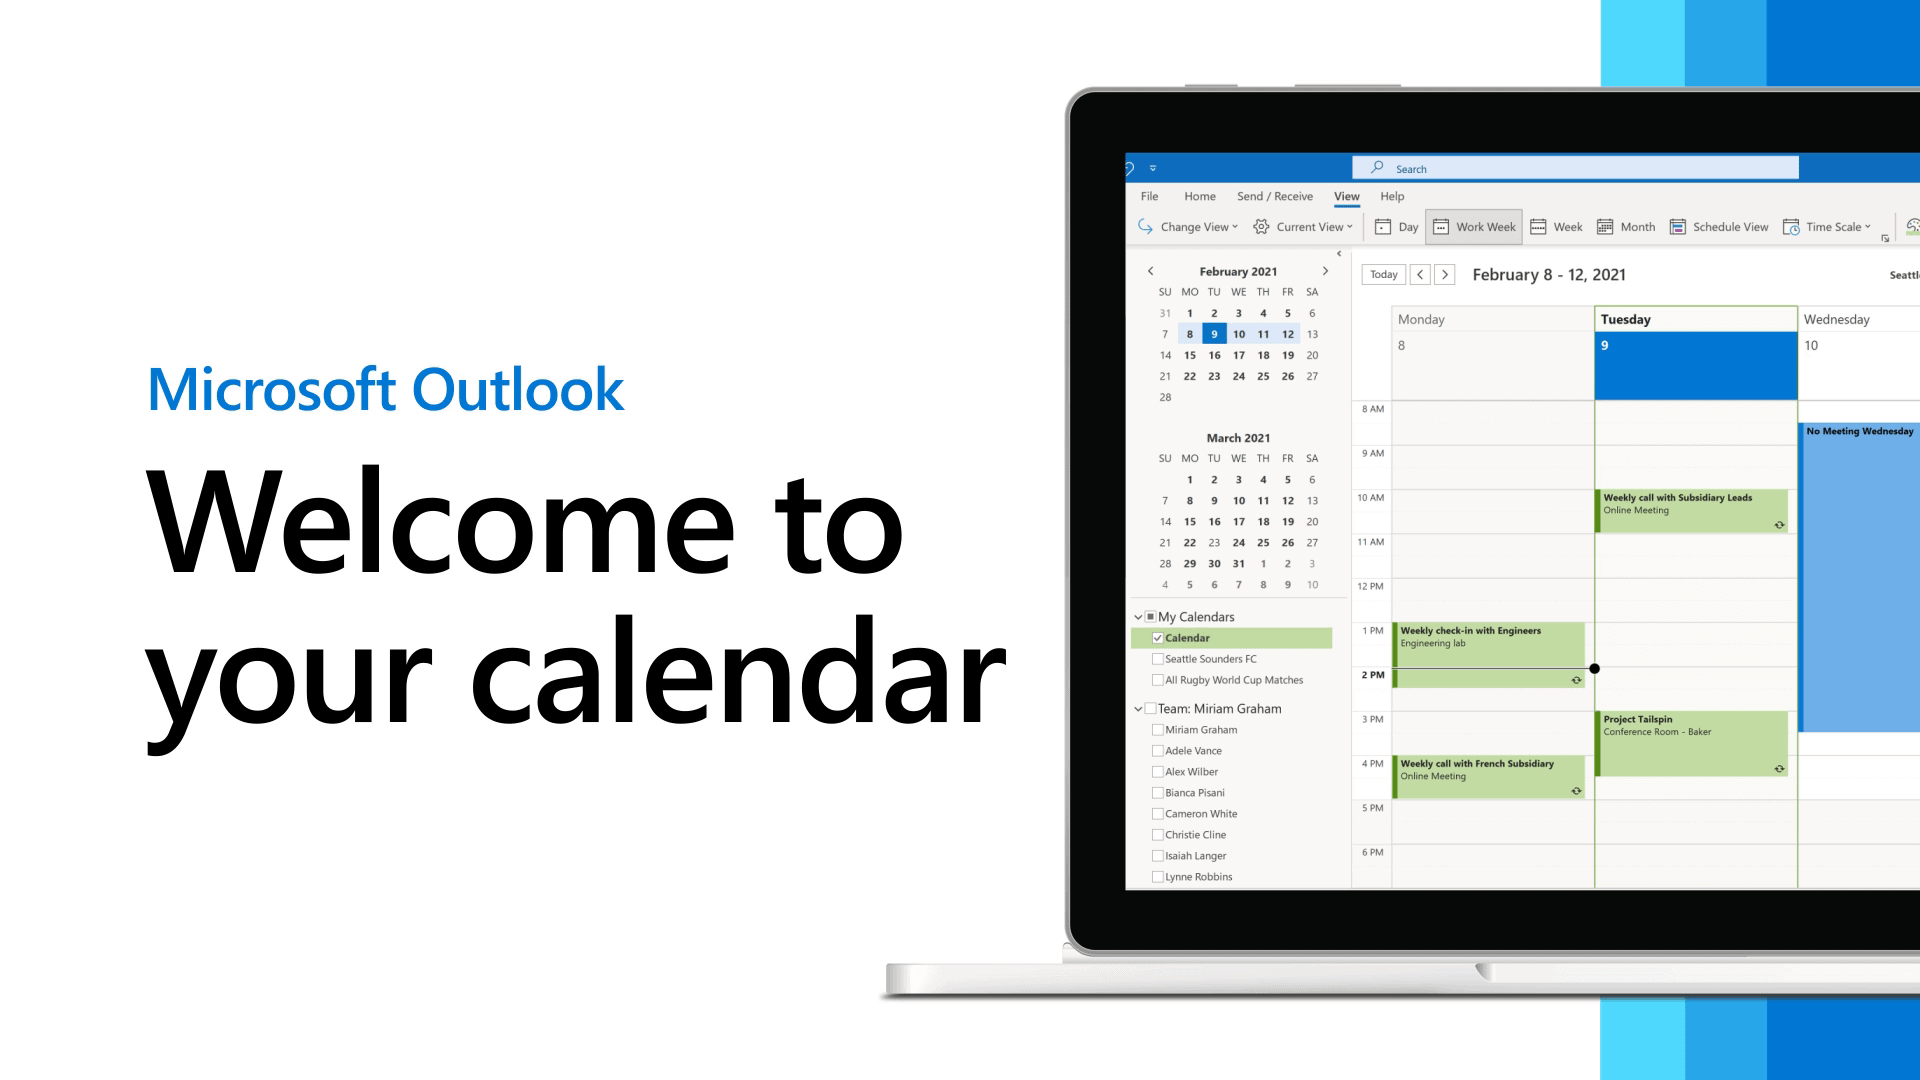 Outlook calendar support